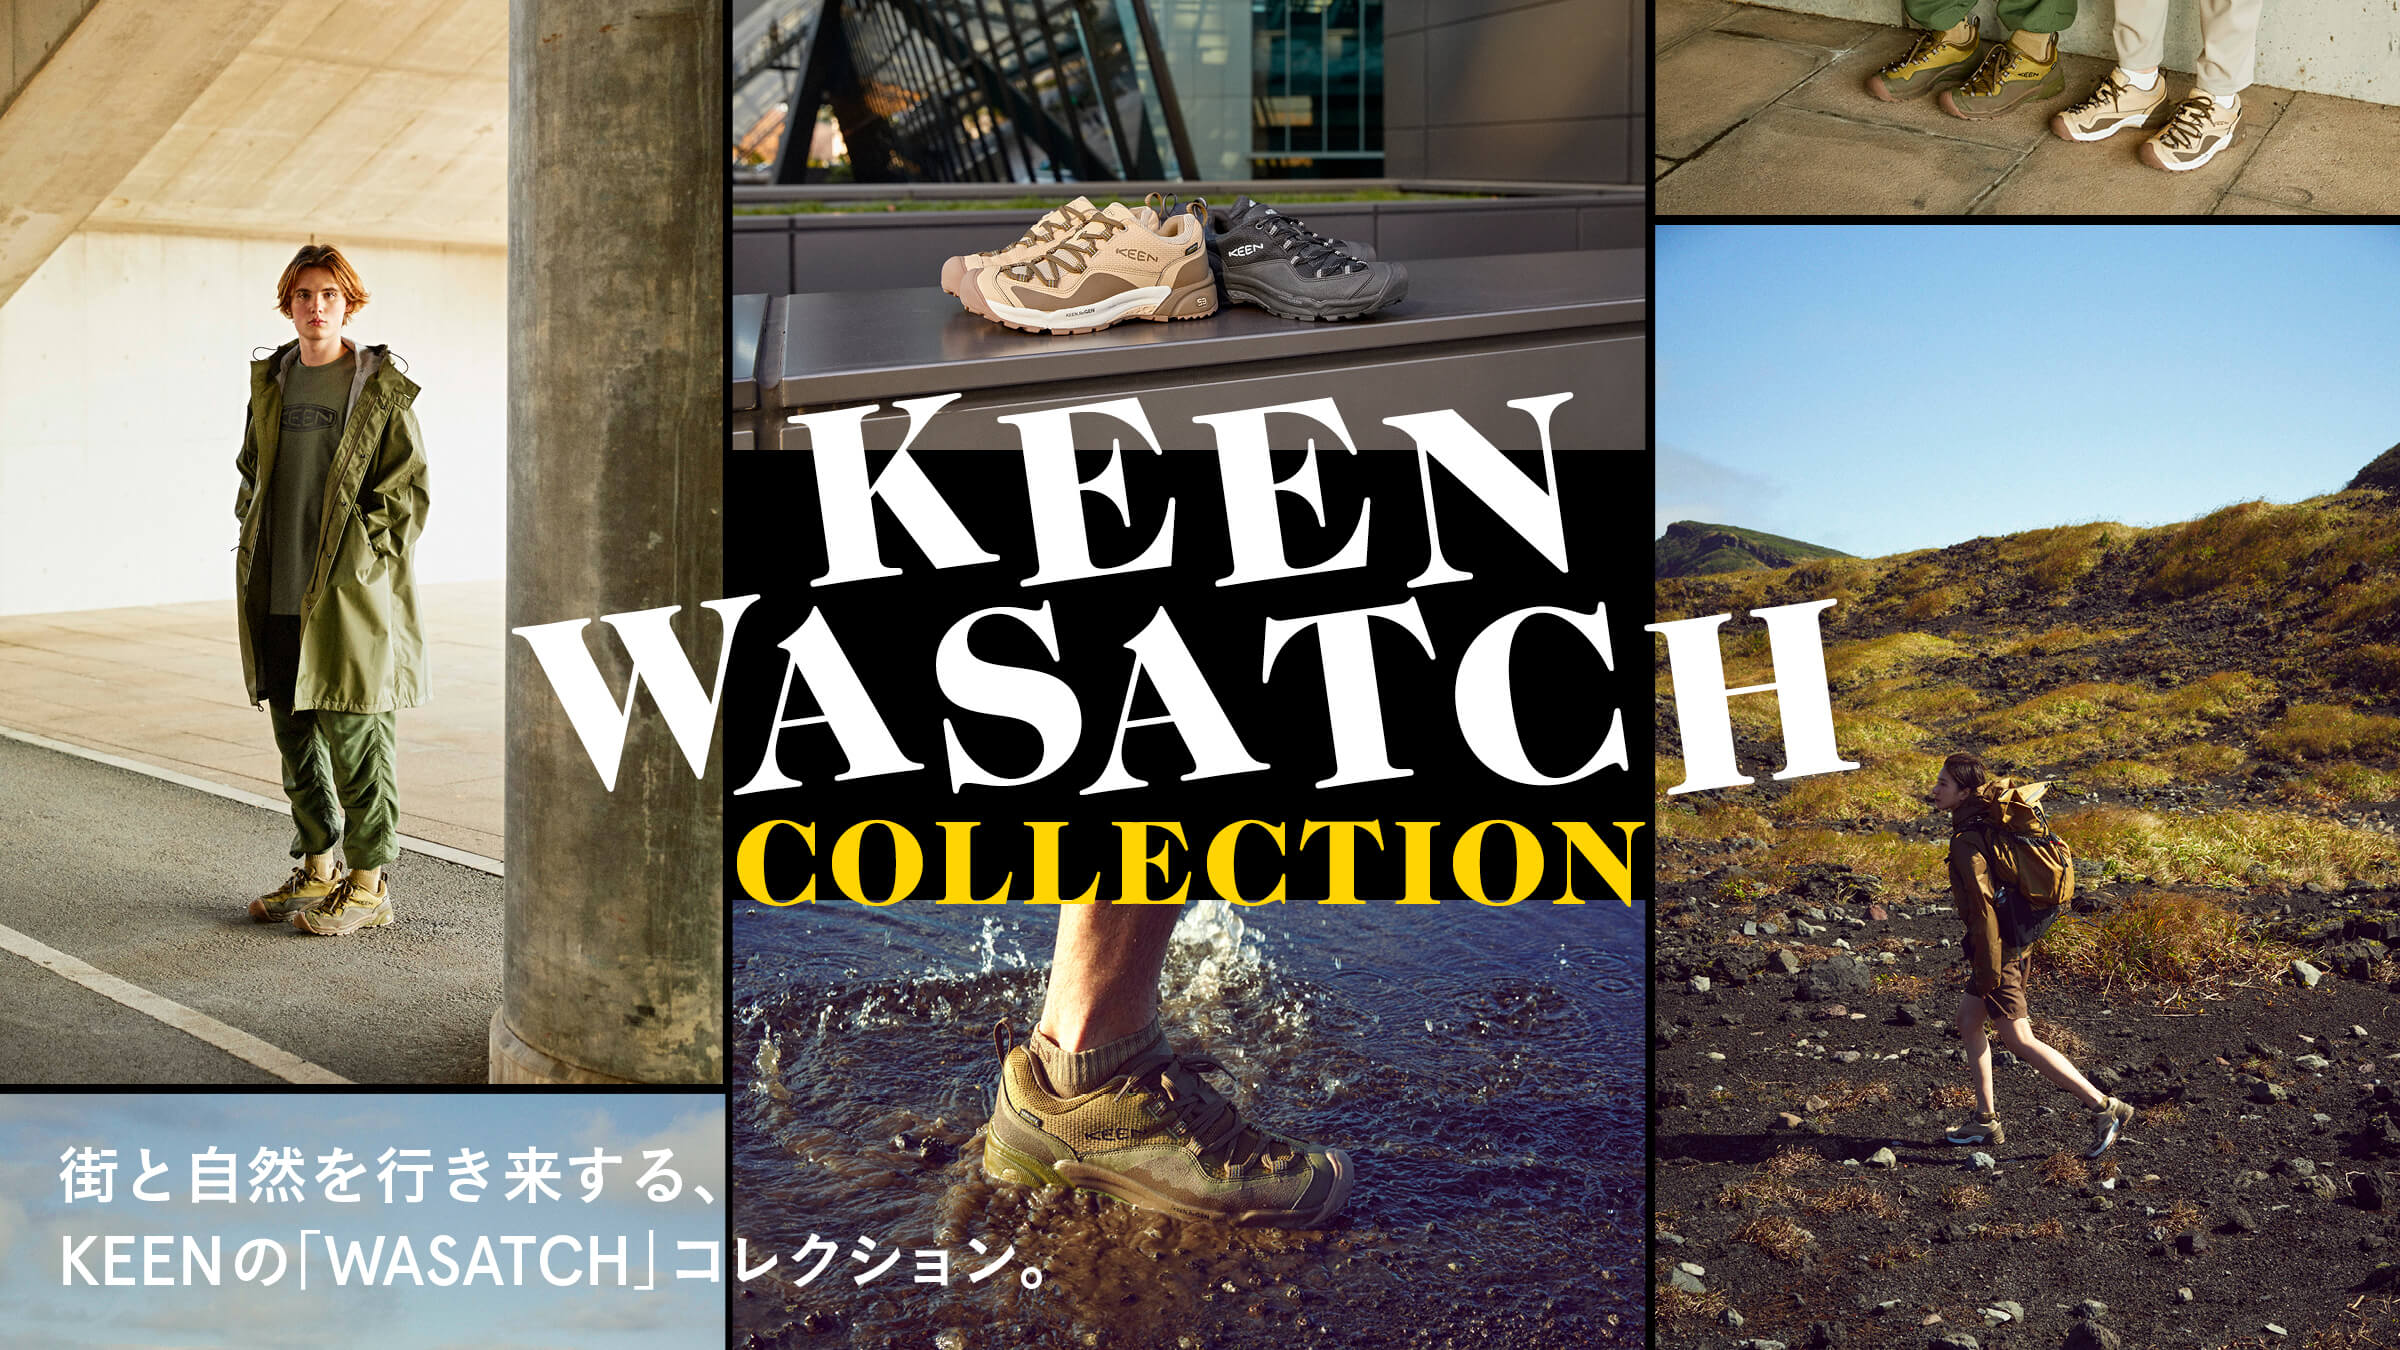 街と自然を行き来する、KEENの「WASATCH」コレクション。